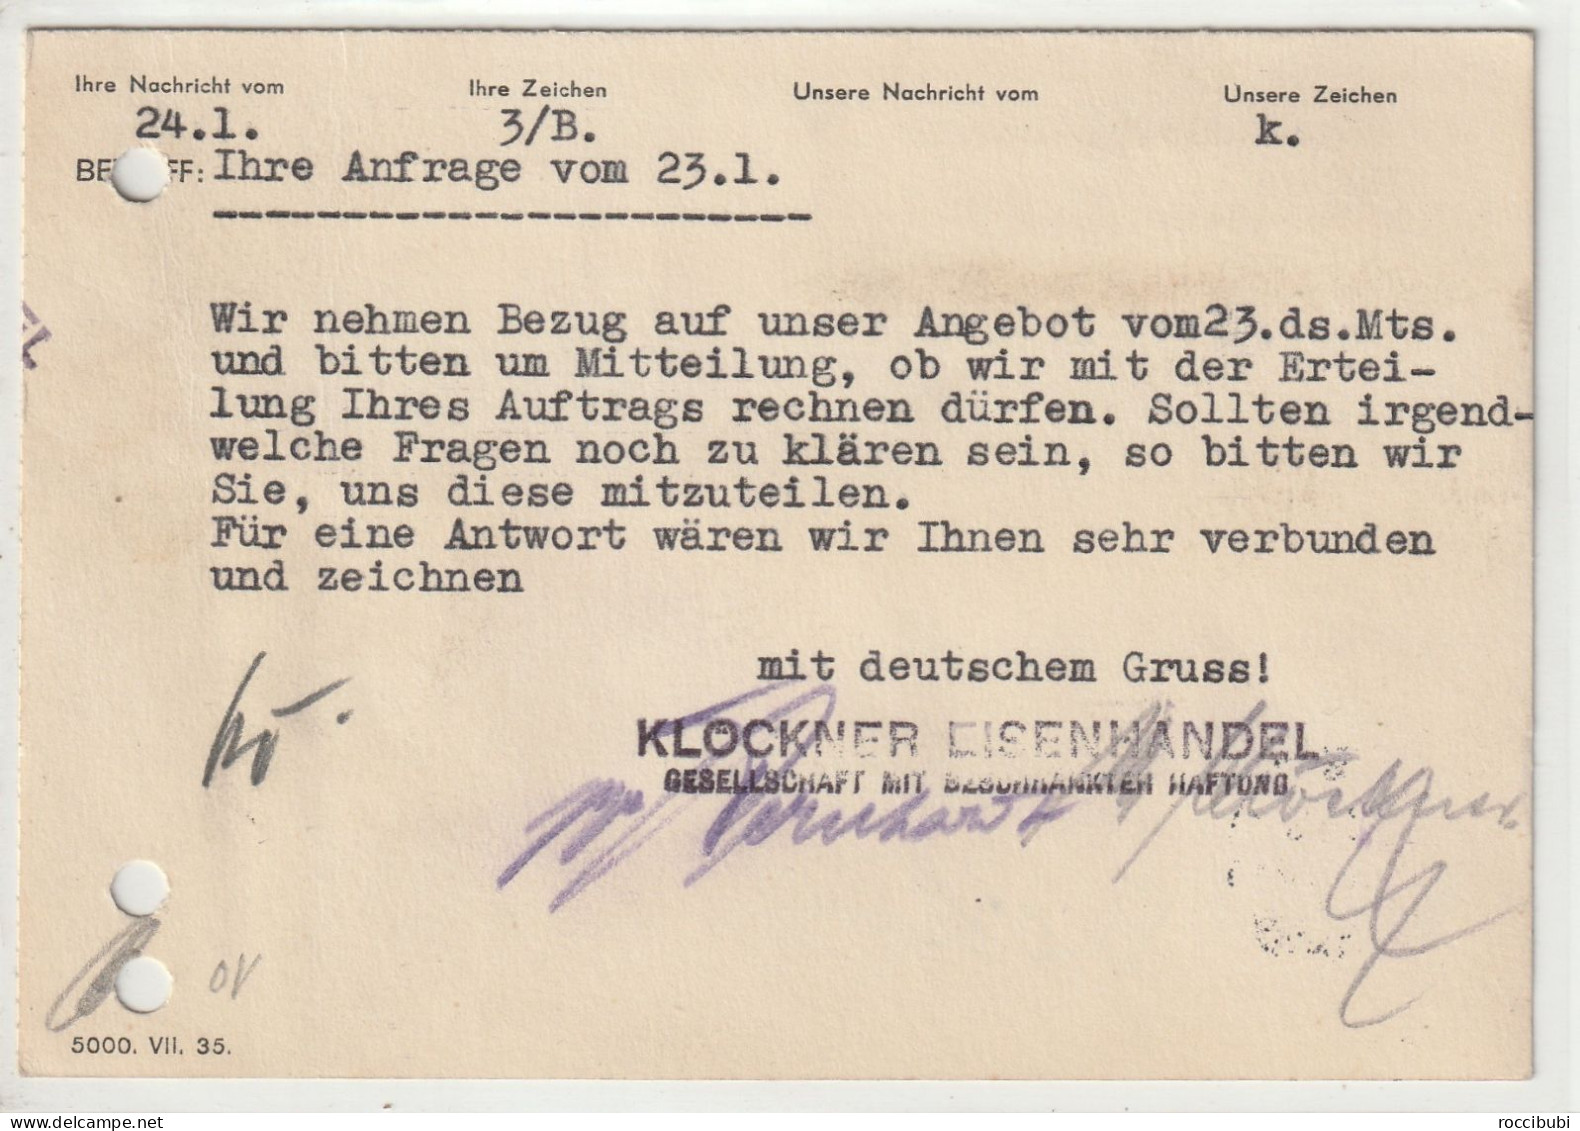 Deutsches Reich, Nürnberg Nach Kempten 1936 - Private Postwaardestukken